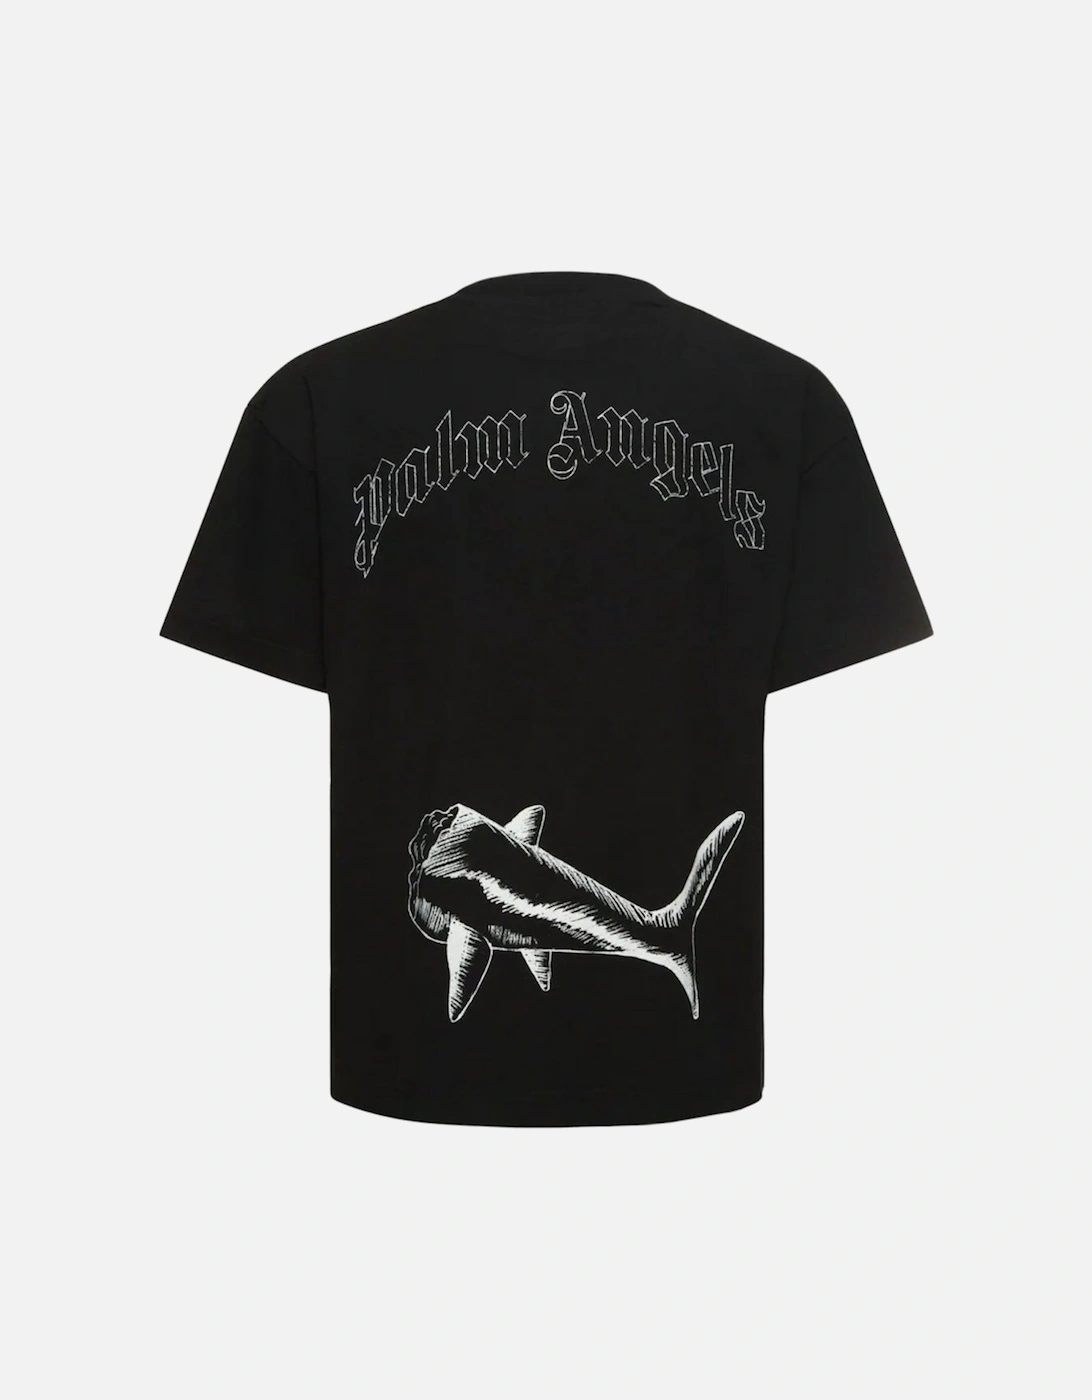 Broken Shark Design Black T-Shirt